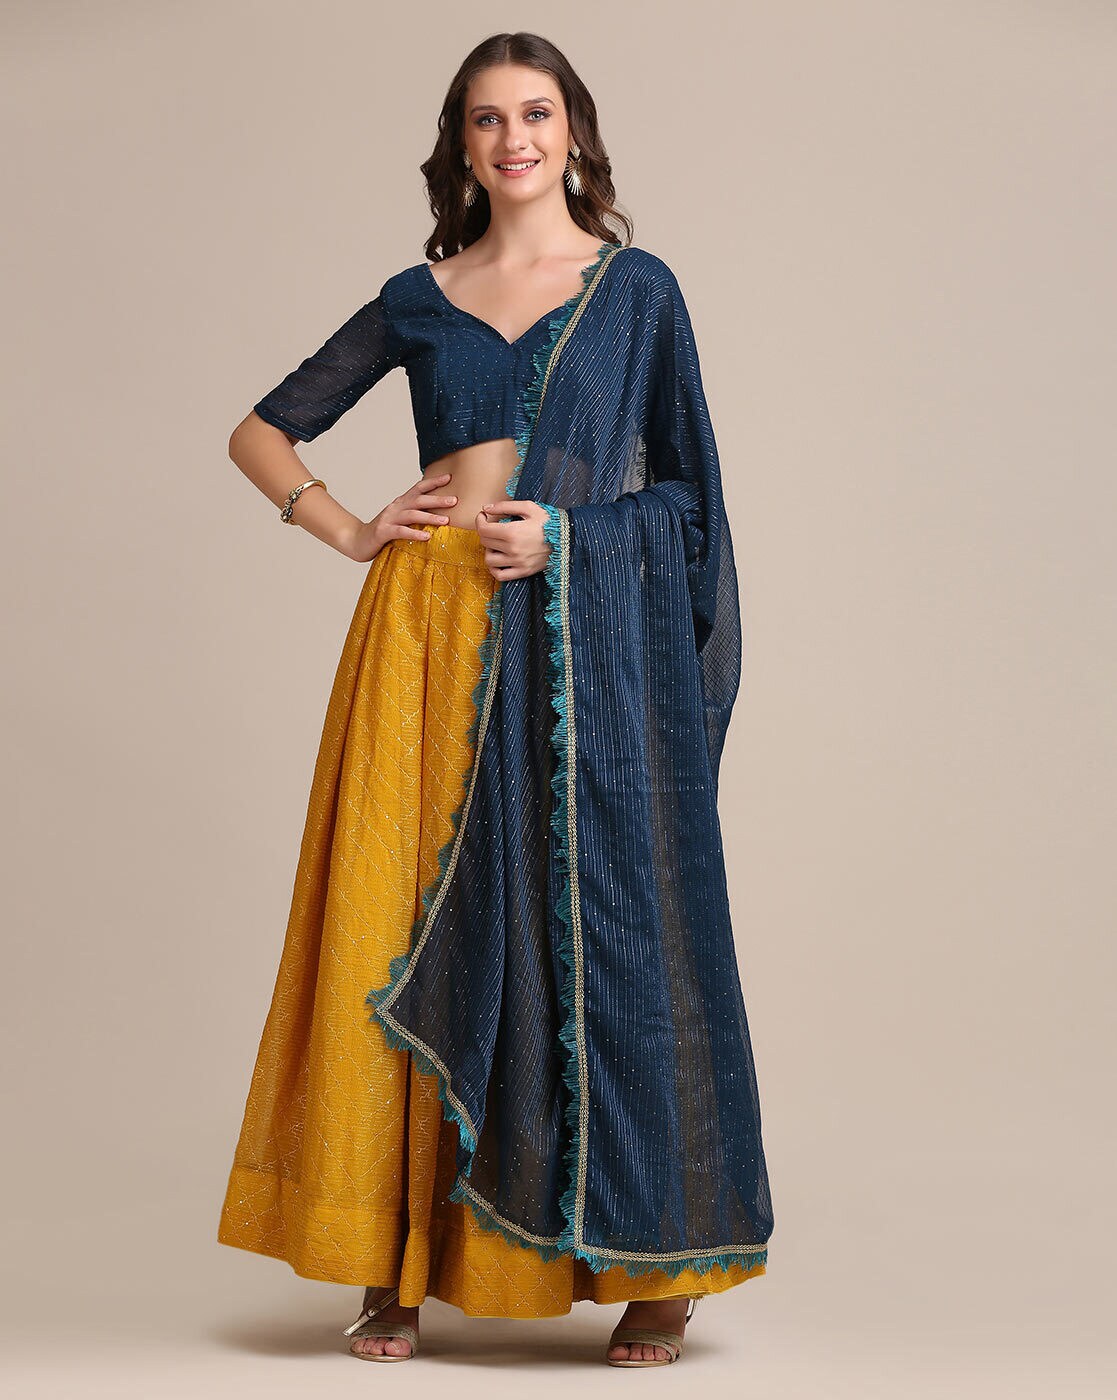 Bridal Gold Dupatta for Lehenga in Uk USA Designer Viel - Etsy UK |  Embroidered mesh dress, Lehenga suit, Stole scarf